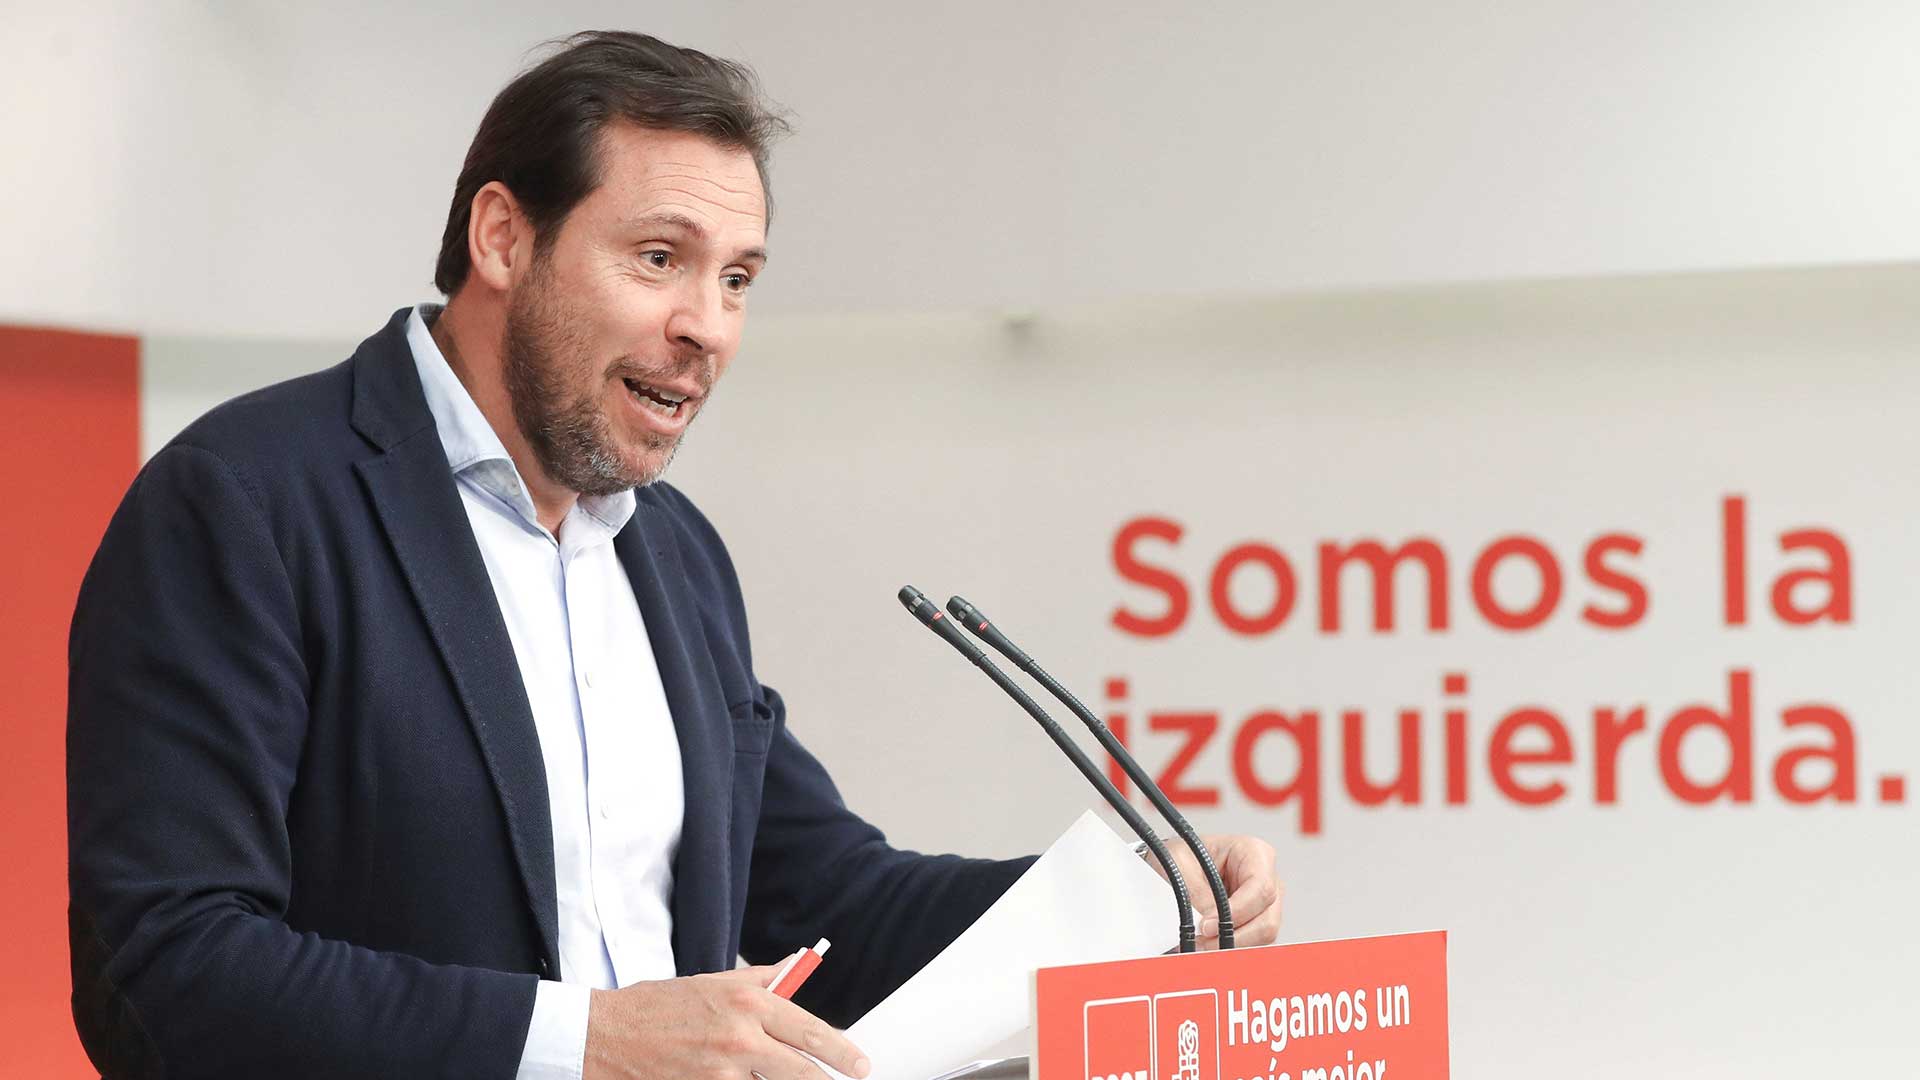 El PSOE quiere exhumar a Franco "sin precipitaciones"